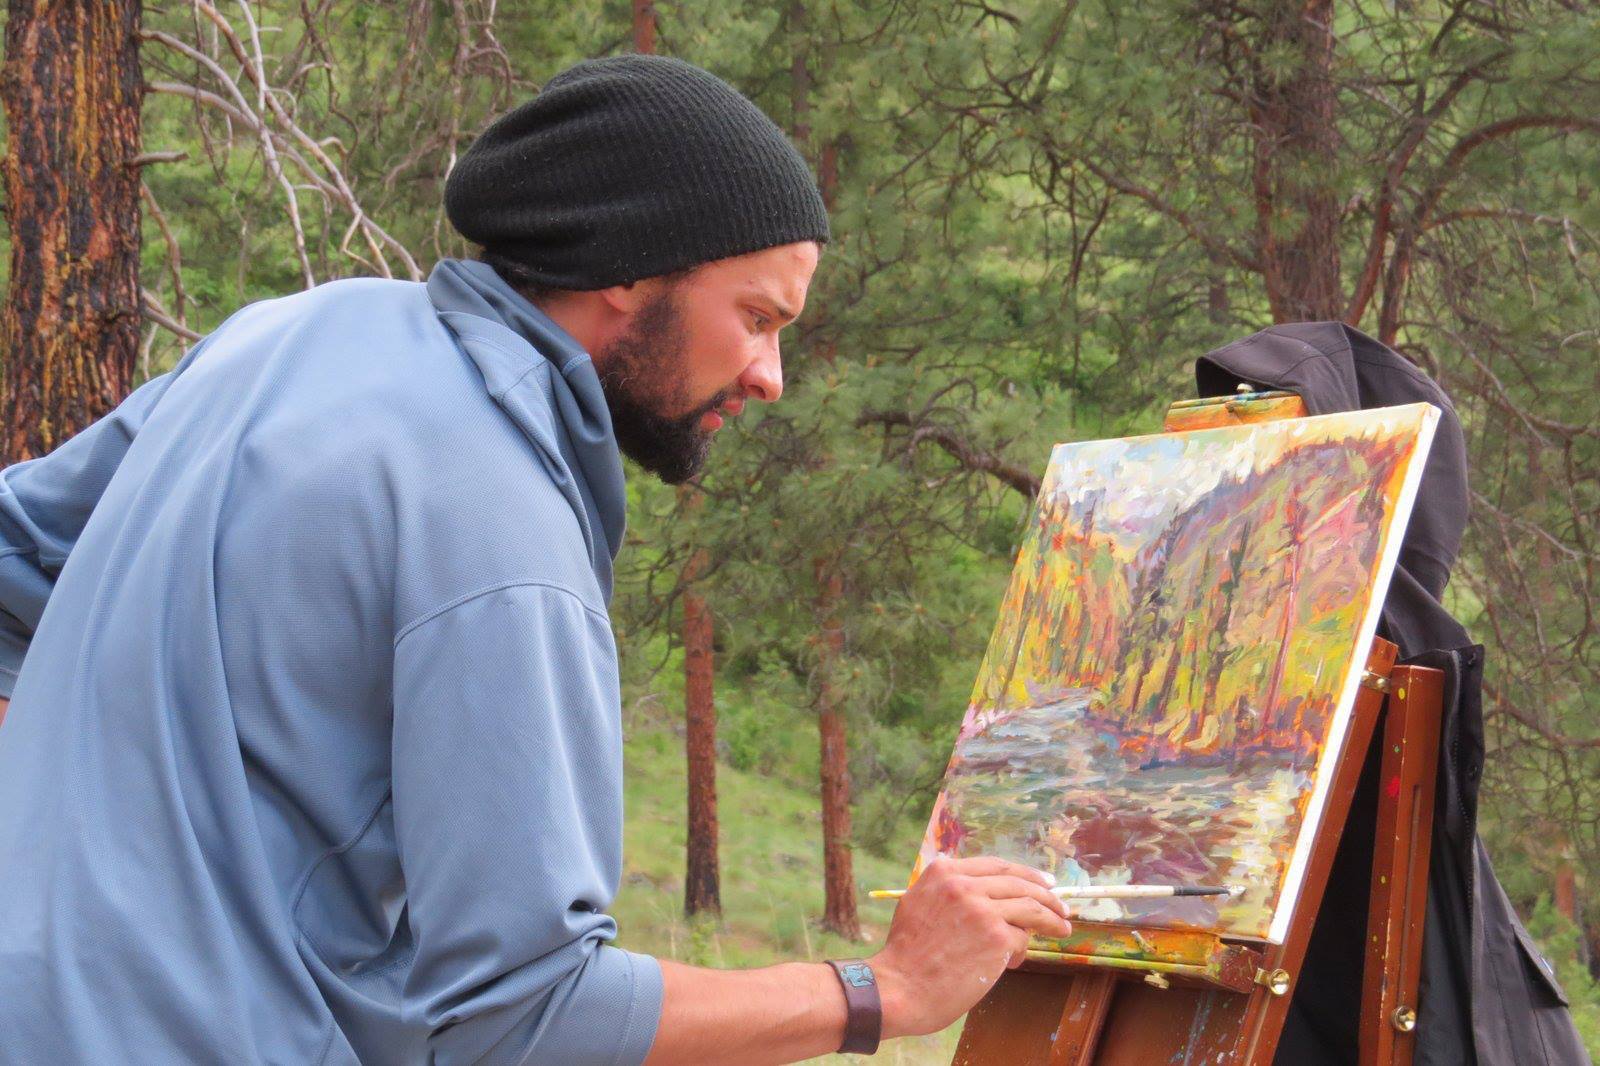 James paints along the river.